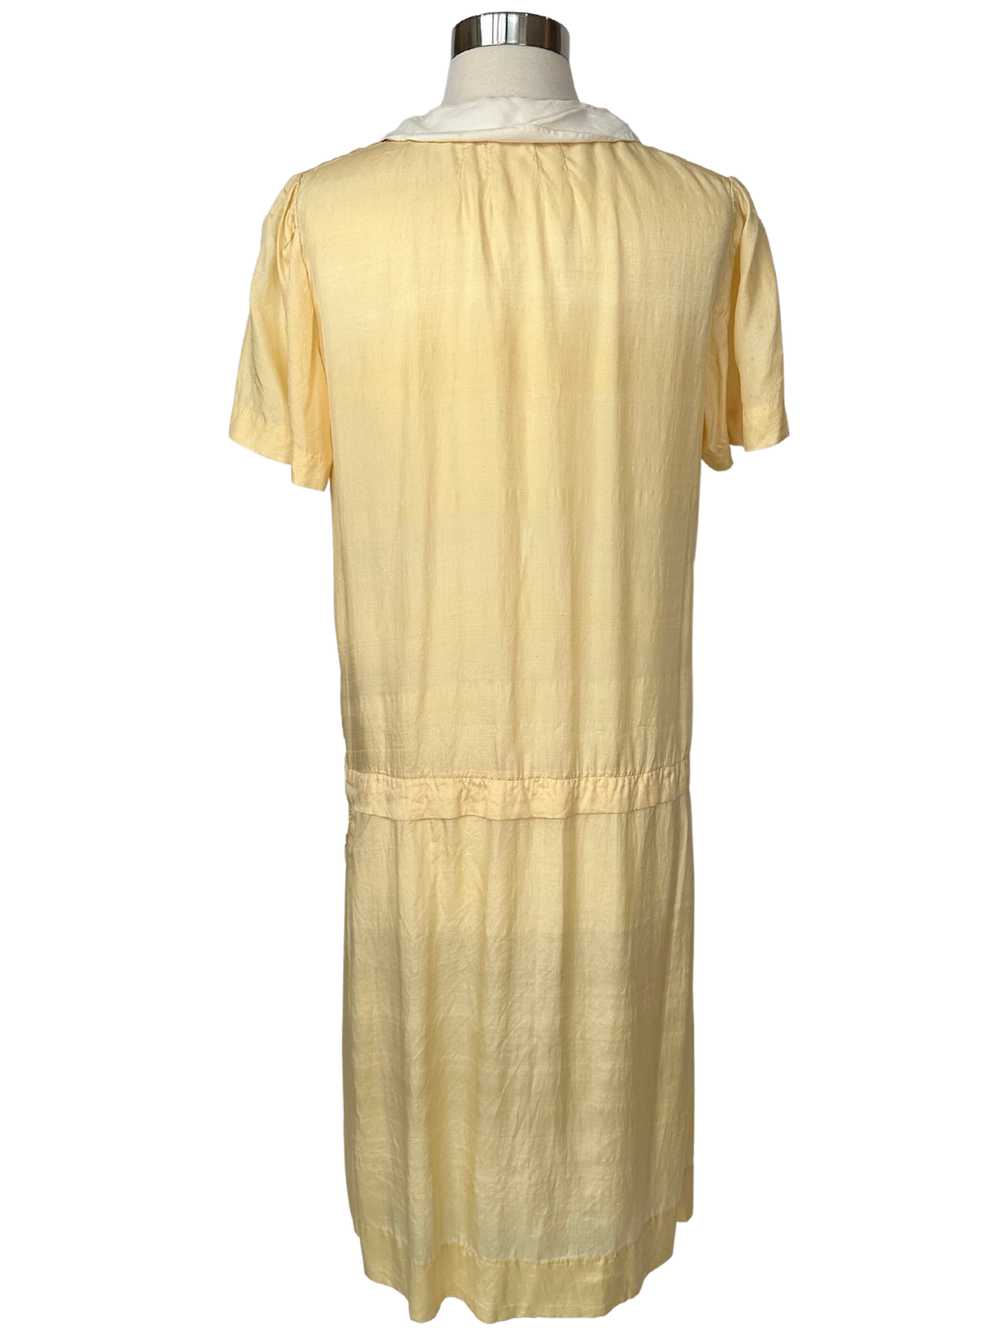 Vintage 1920s Yellow Cotton Flapper Dress - M - image 3